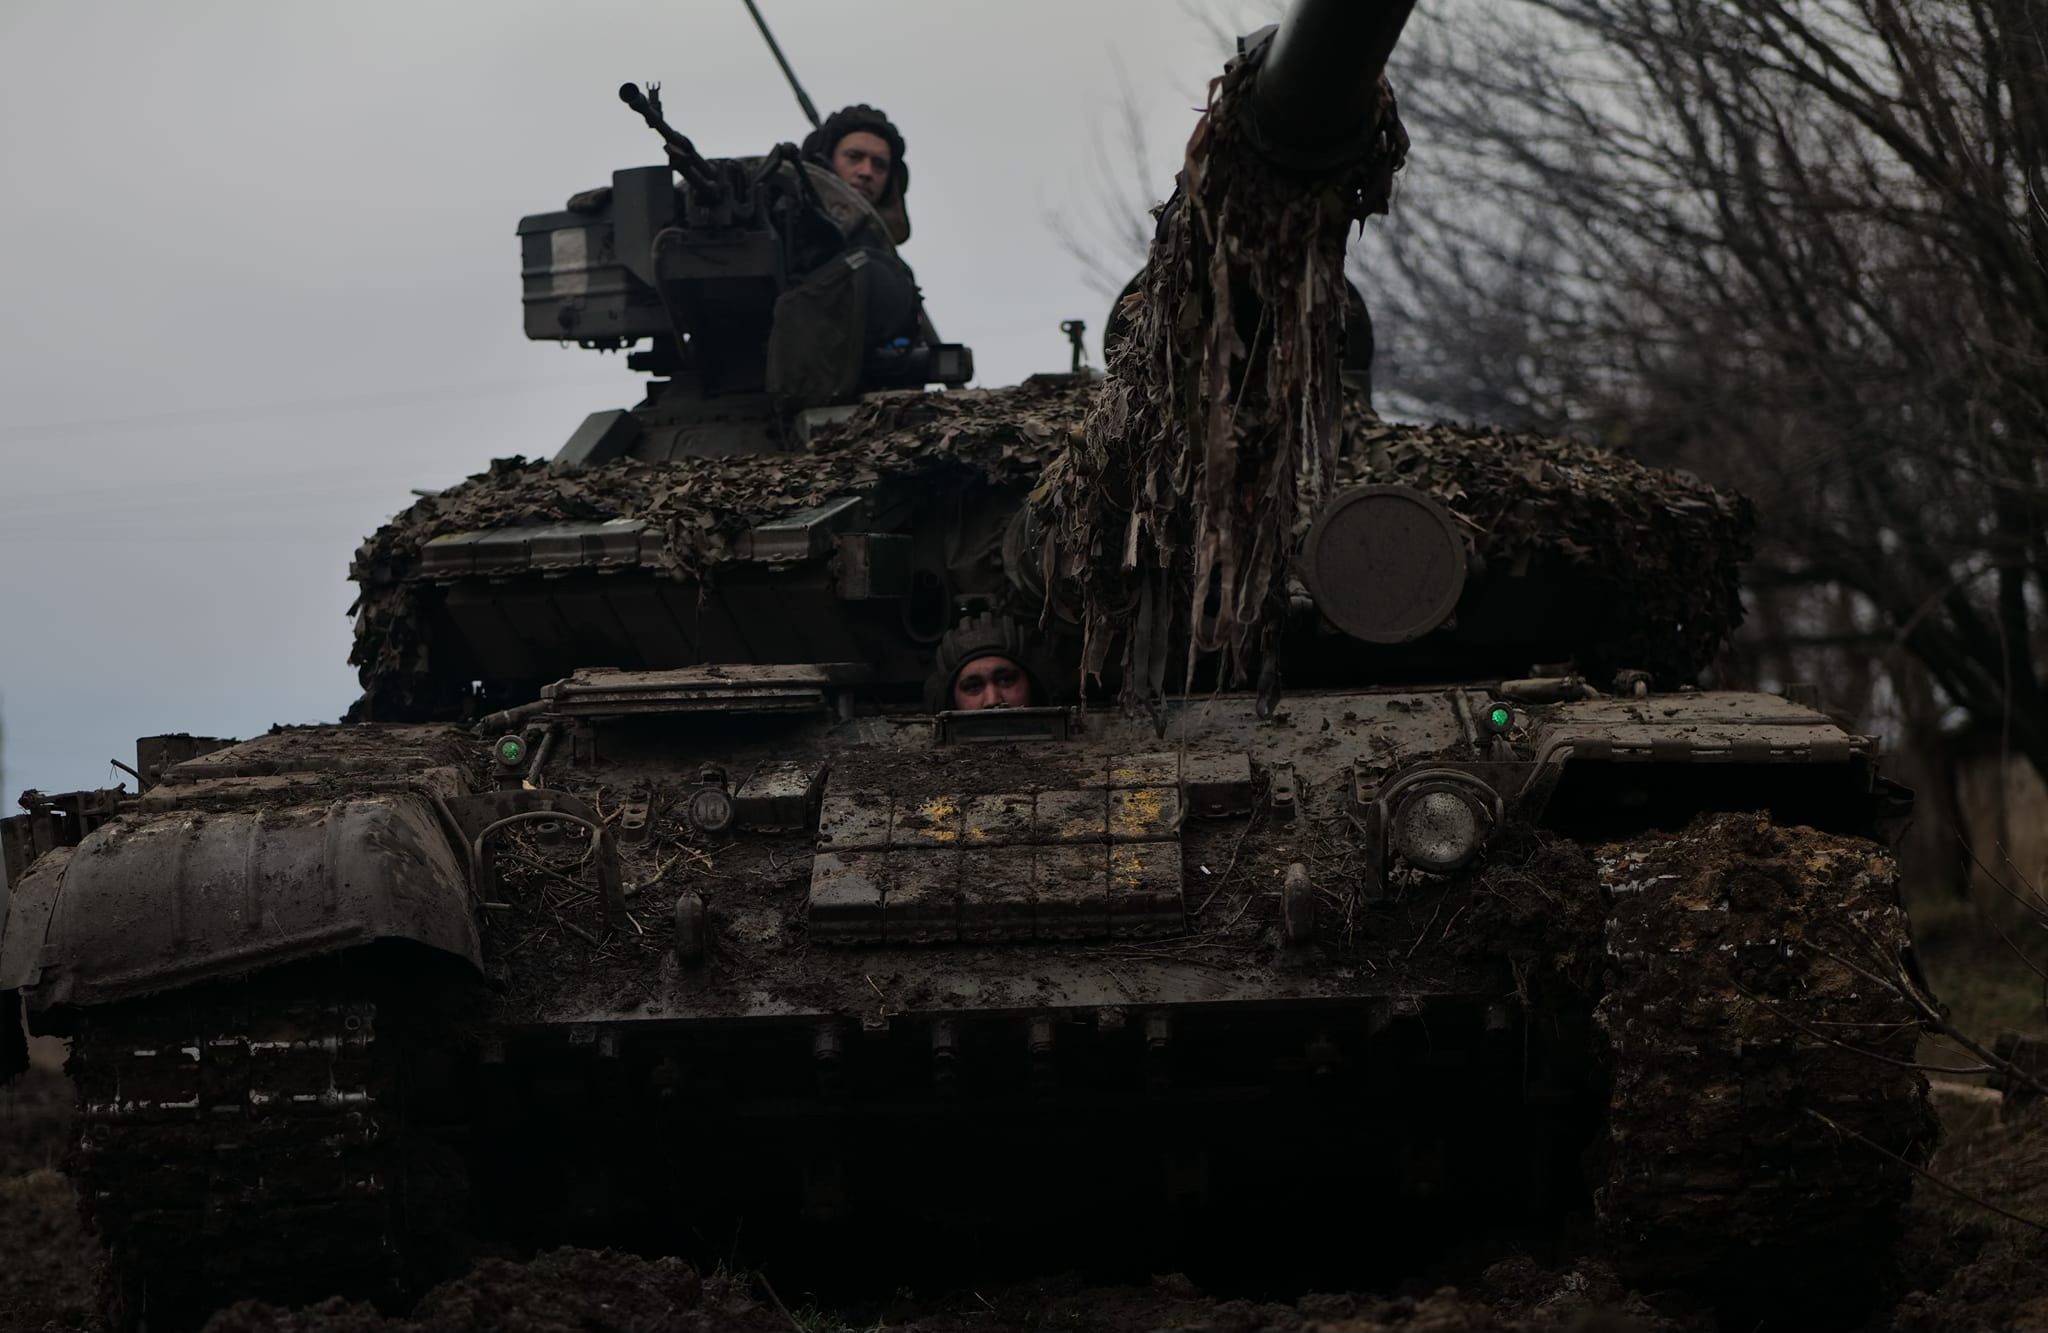 Situația extrem de neplăcută în care se află acum Ucraina după ce și-a retras forțele din Avdiivka, invocând o mare criză de muniție. Sursa Foto- Facebook, Volodimir Zelenski 